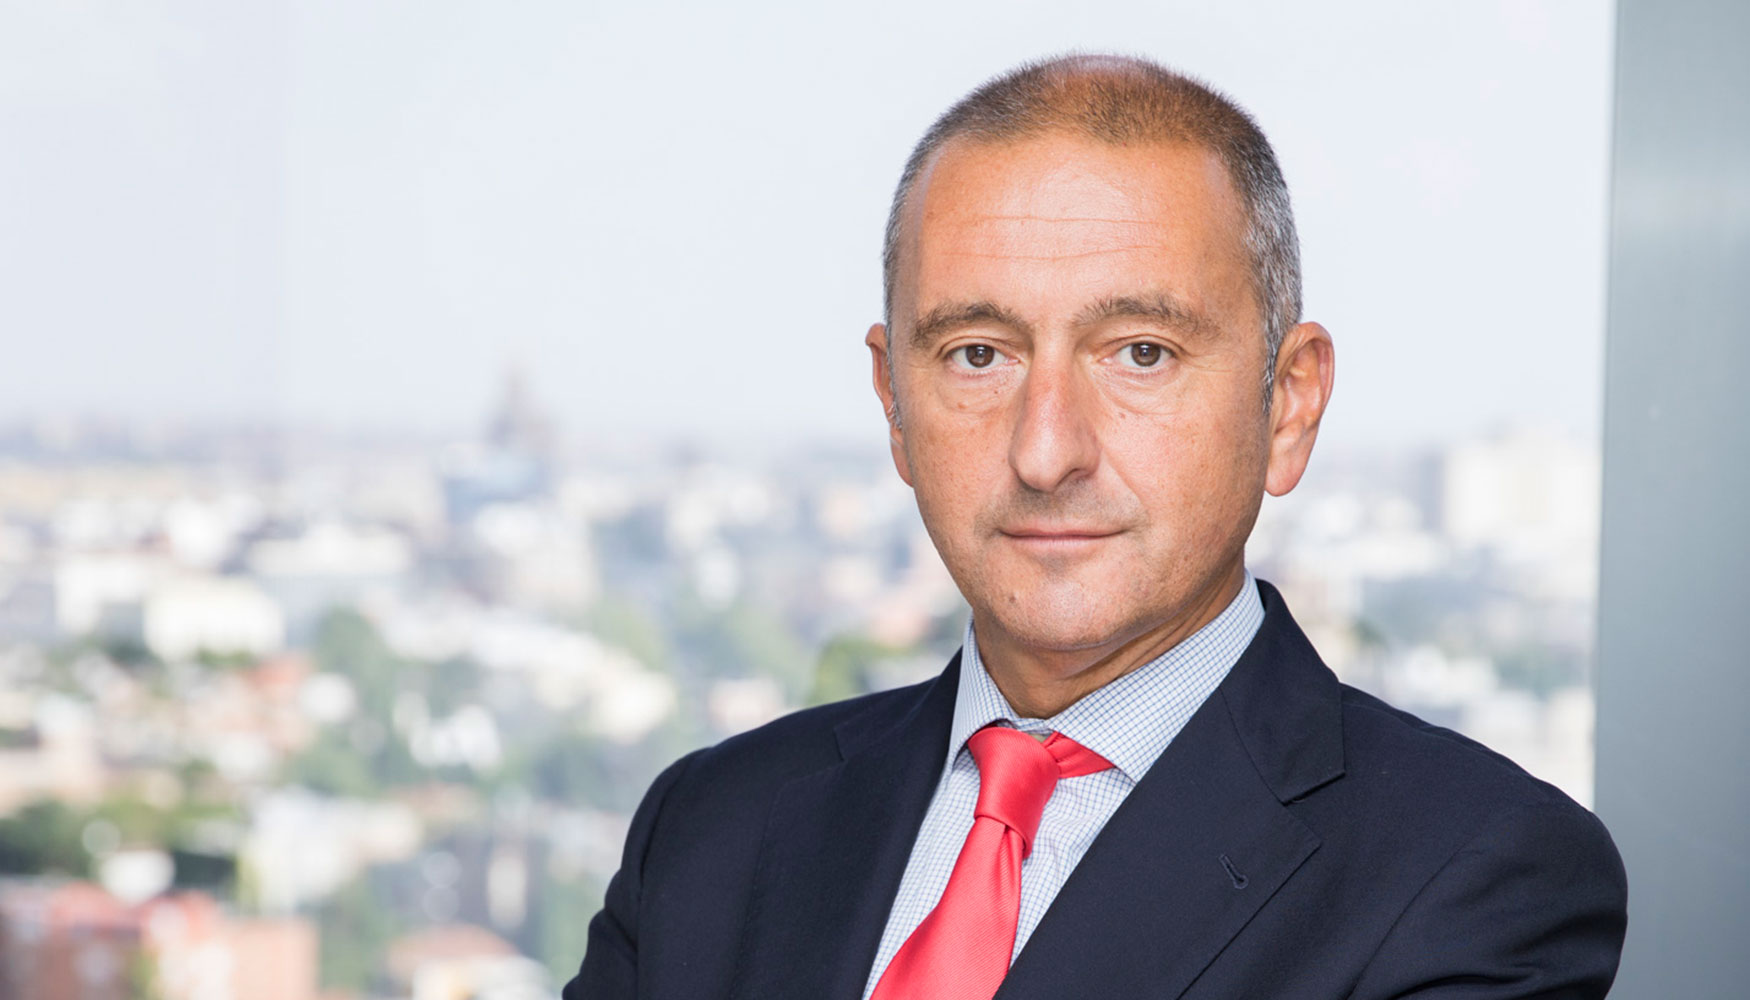 Miguel ngel Martos, Regional Sales Director para Espaa, Italia y Portugal, Zscaler